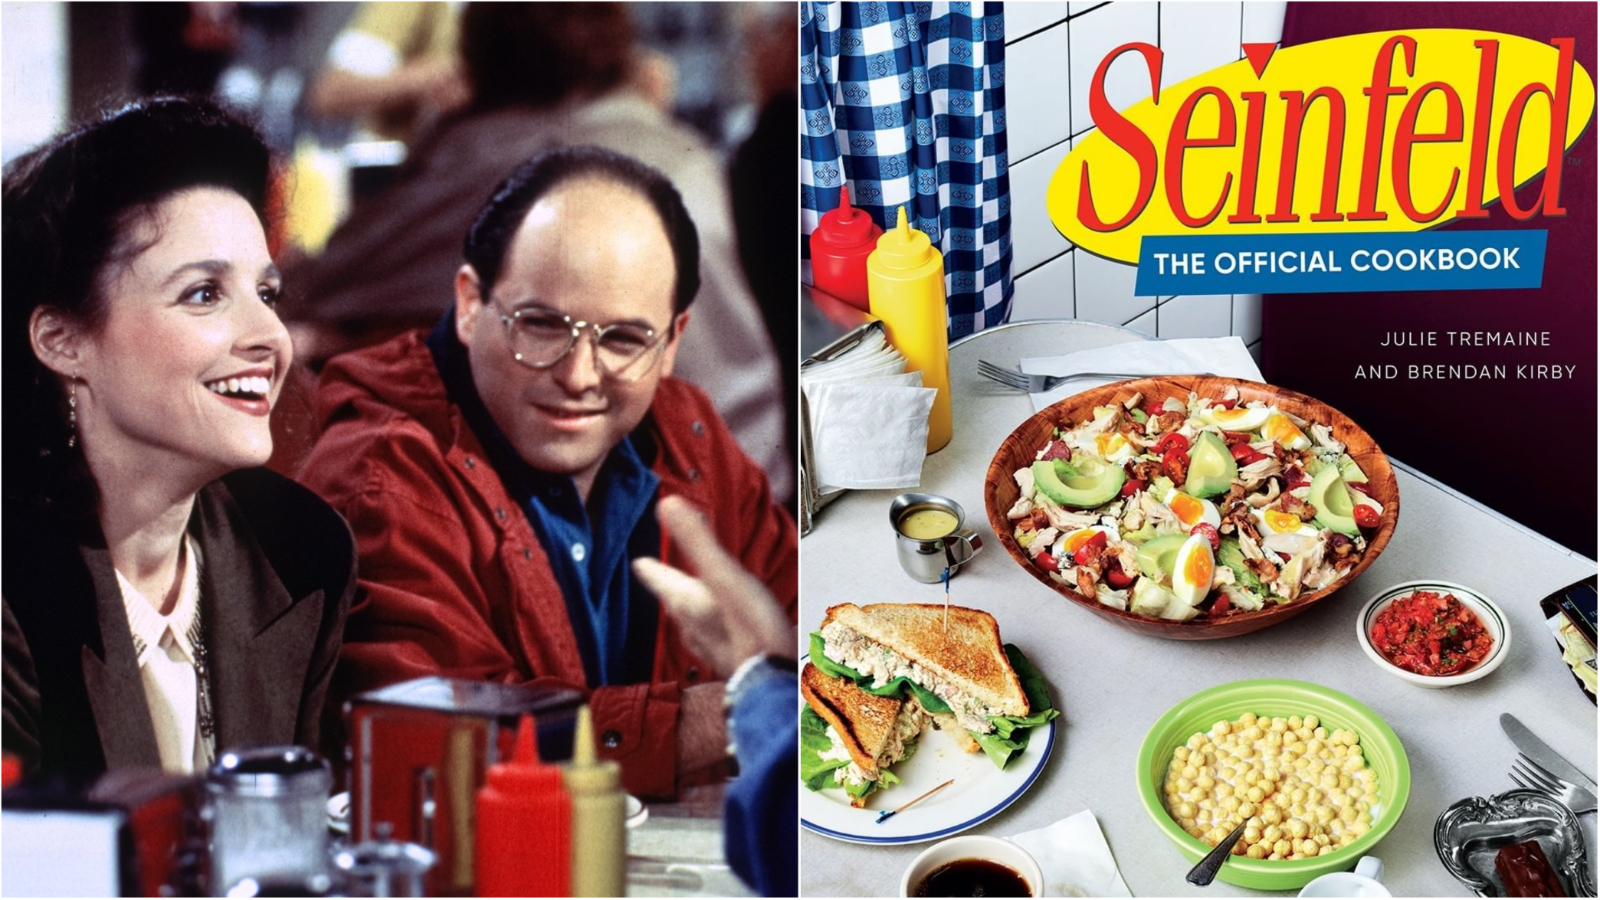 Jela inspirirana serijom: Uskoro izlazi Seinfeld kuharica